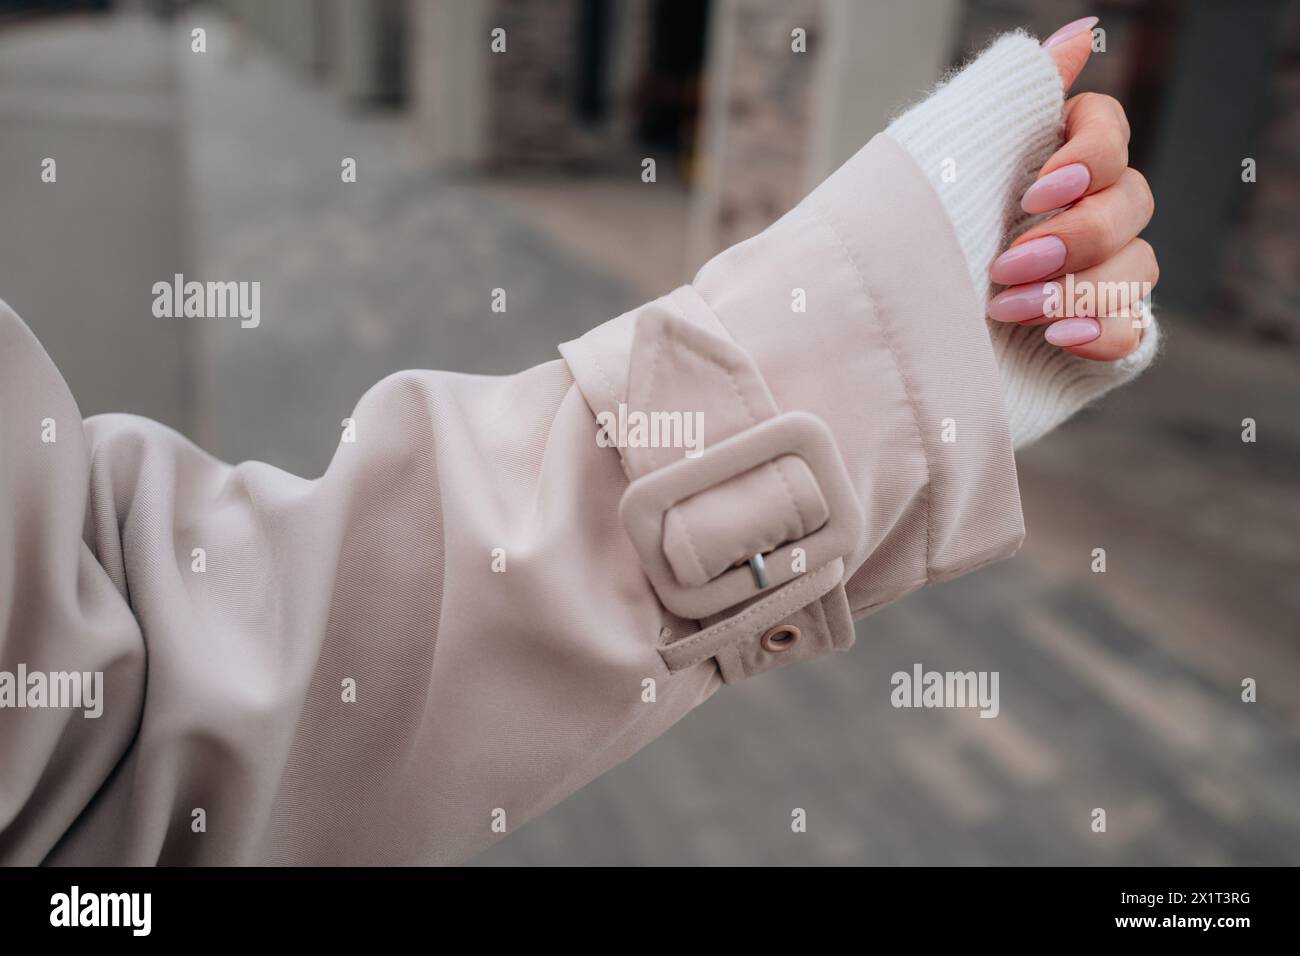 Détails de mode d'une manche de trench femme beige, main féminine avec manucure rose Banque D'Images